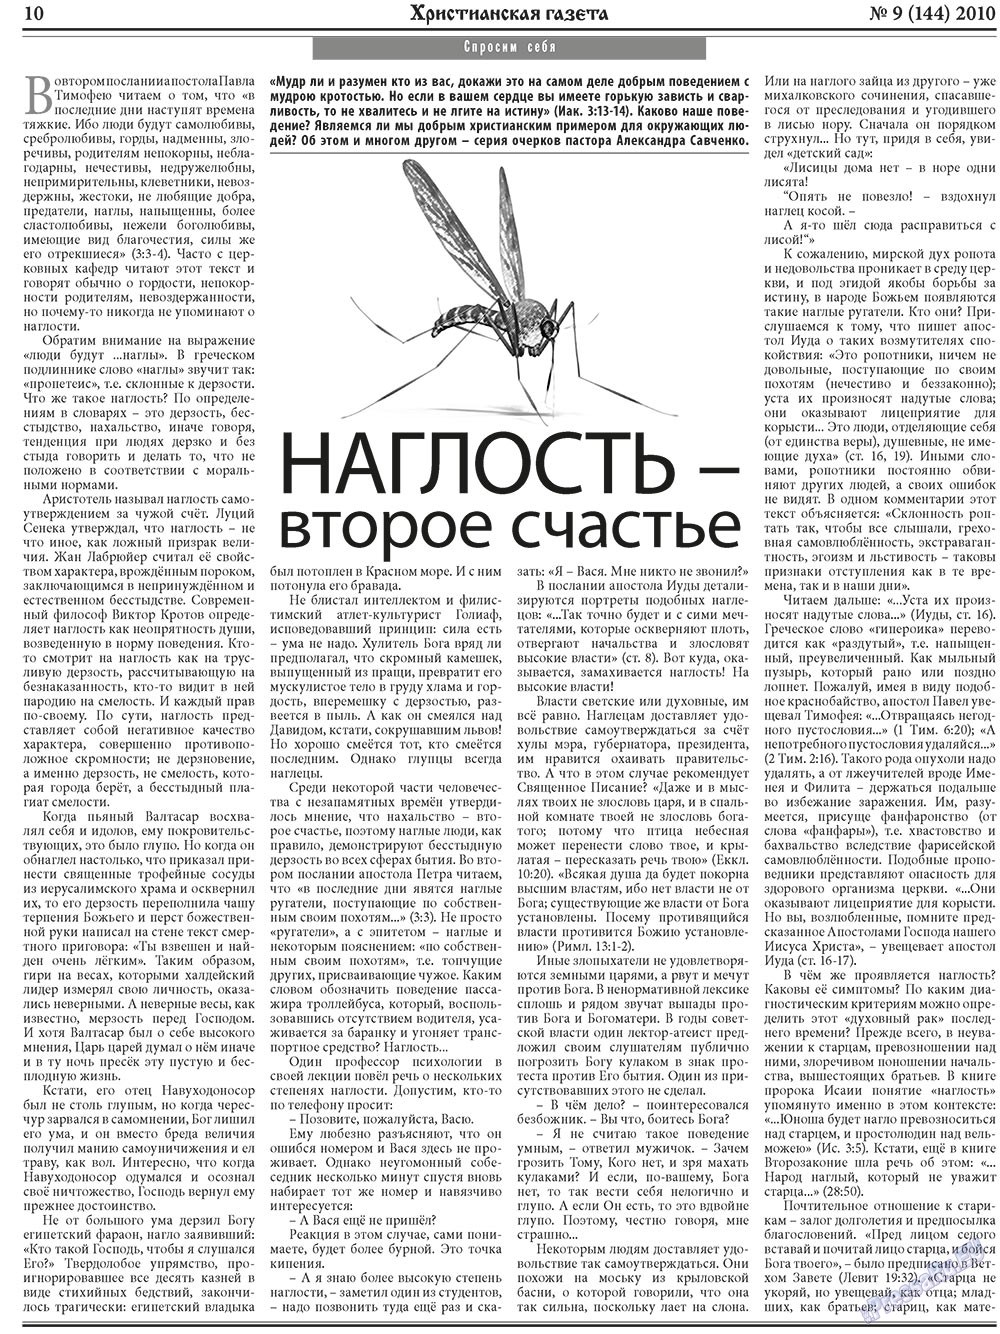 Христианская газета, газета. 2010 №9 стр.10